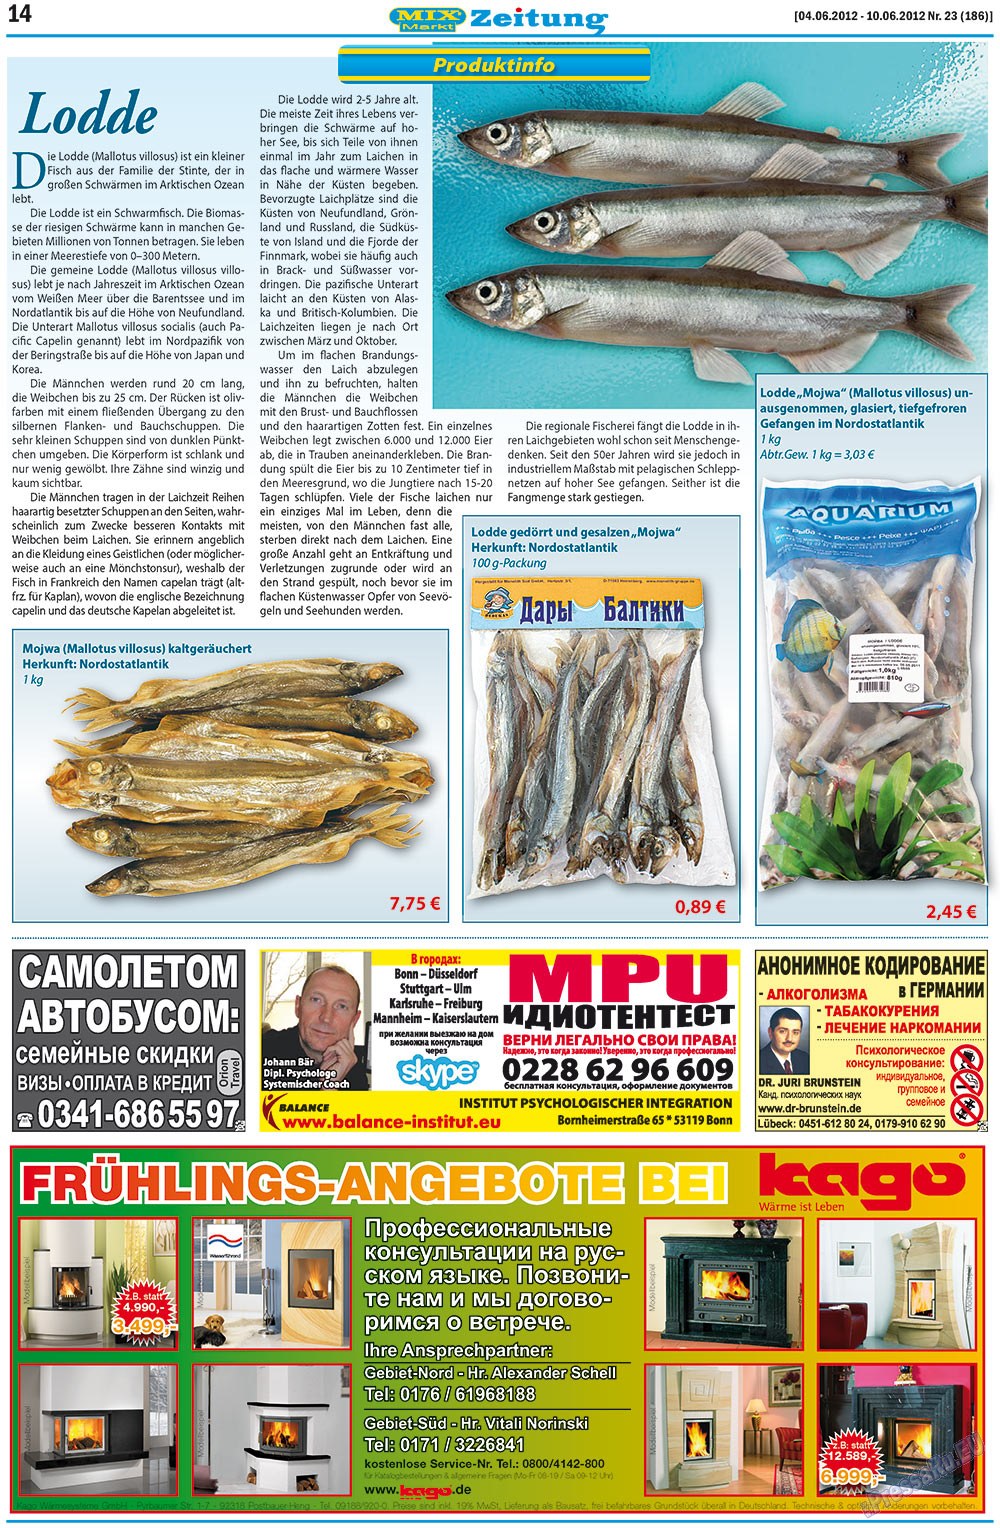 MIX-Markt Zeitung, газета. 2012 №23 стр.14